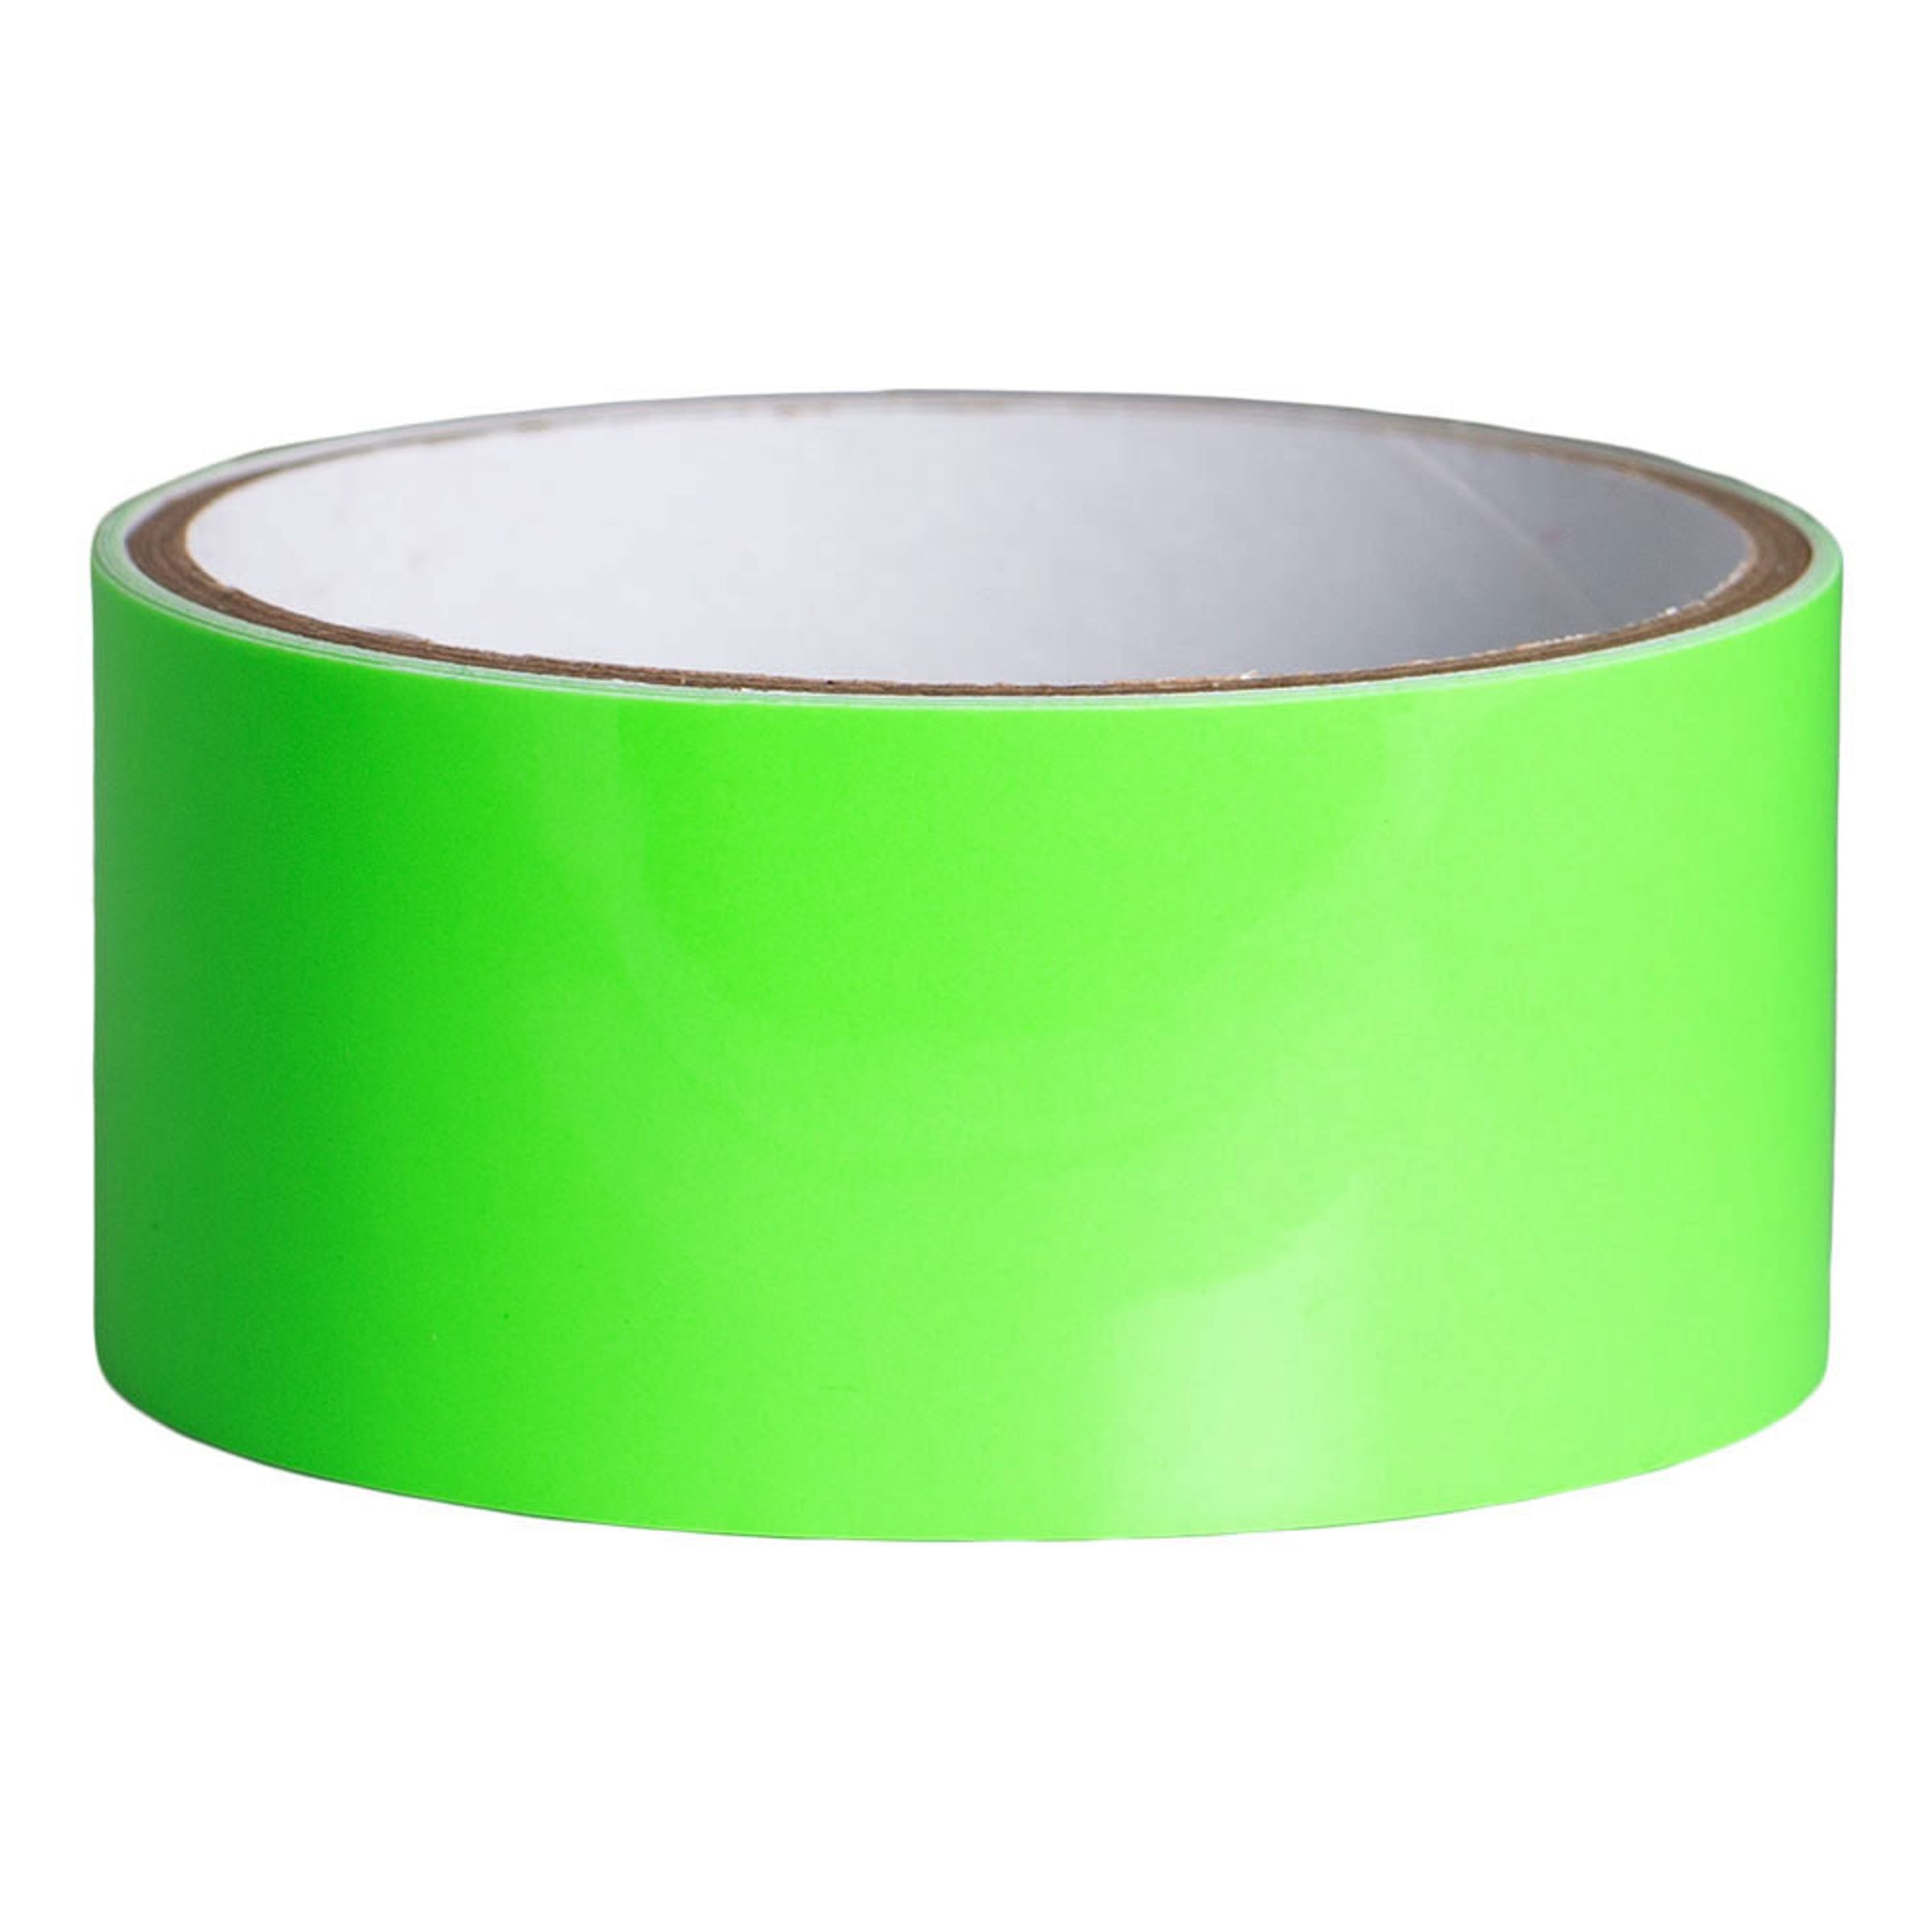 Självlysande Tejp Grön - Grön 40mmx3m